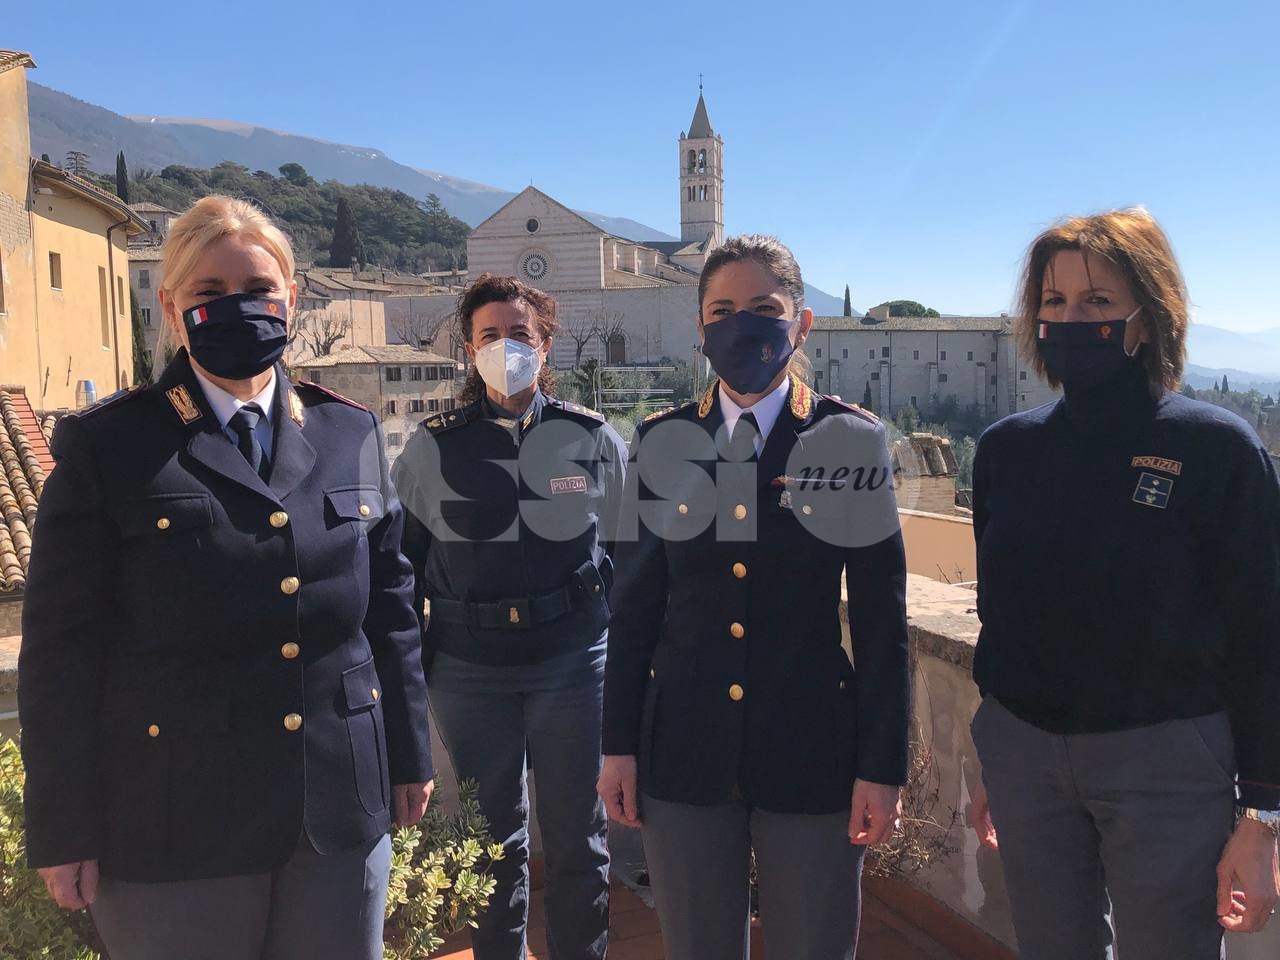 Commissariato di Assisi, una 'forza rosa' ai vertici: quattro donne apicali (video)